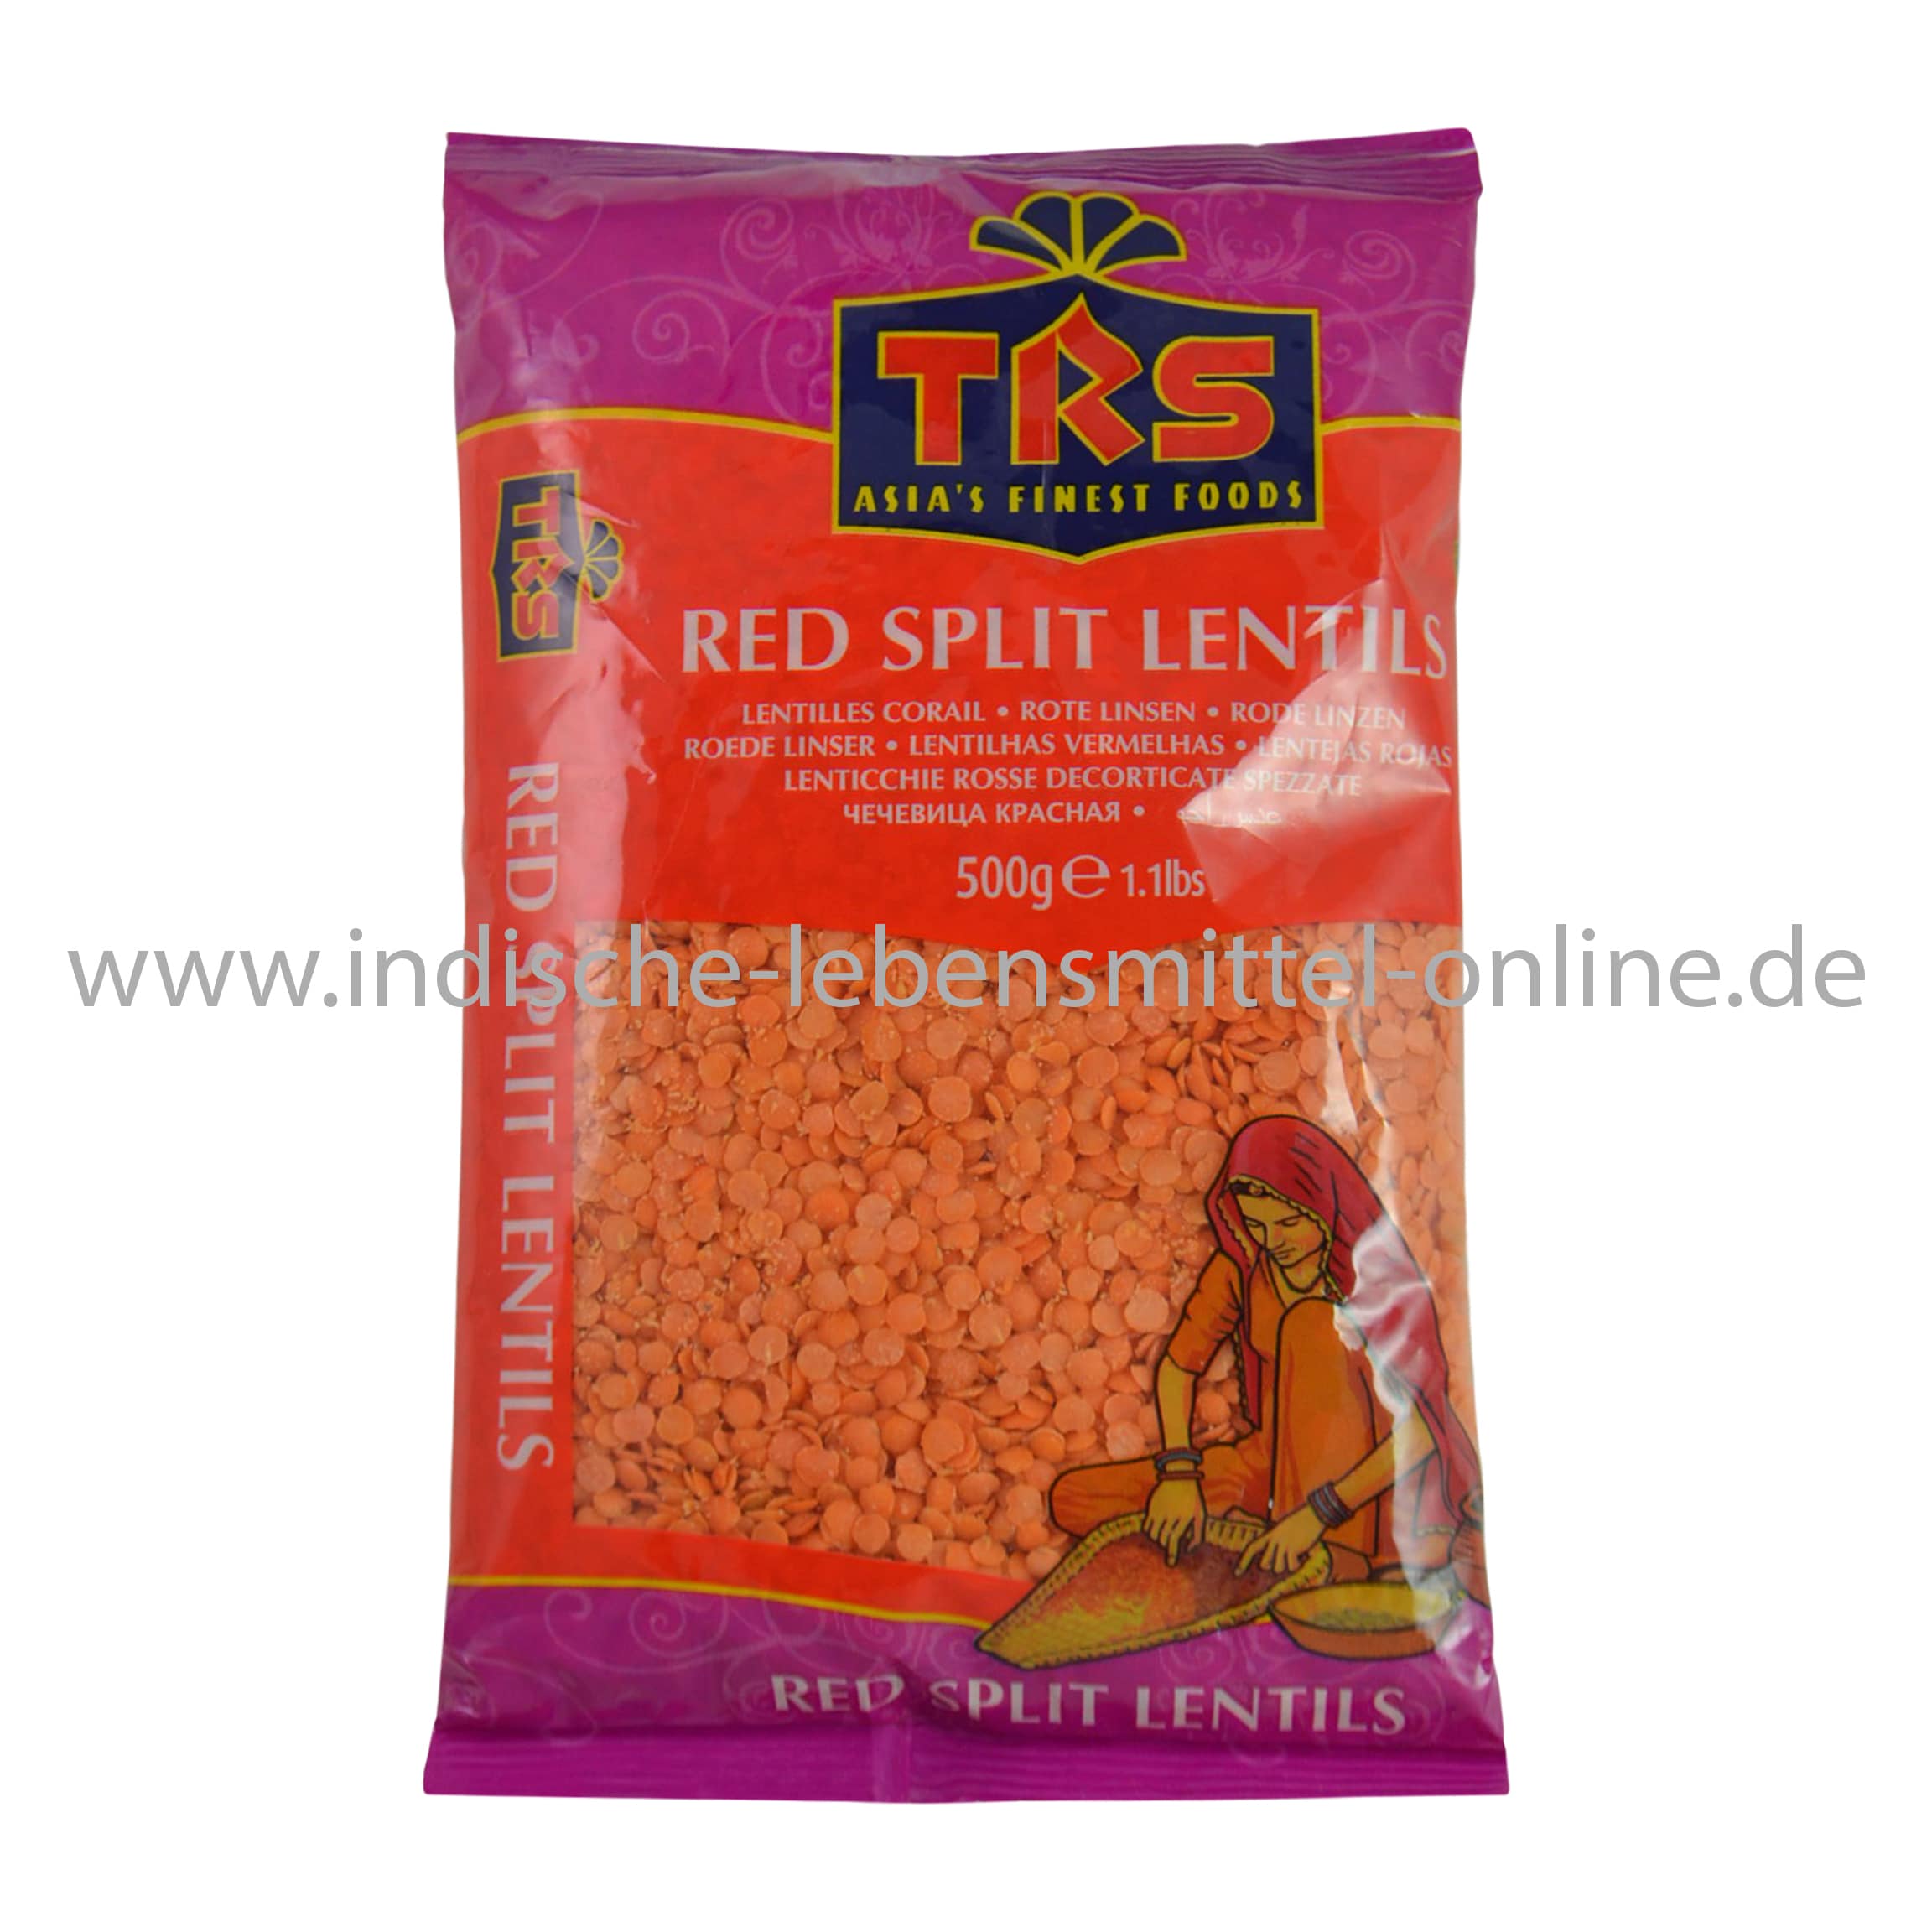 https://www.indische-lebensmittel-online.de/wp-content/uploads/rote-linsen-red-lentils-masoor-trs-1.jpg